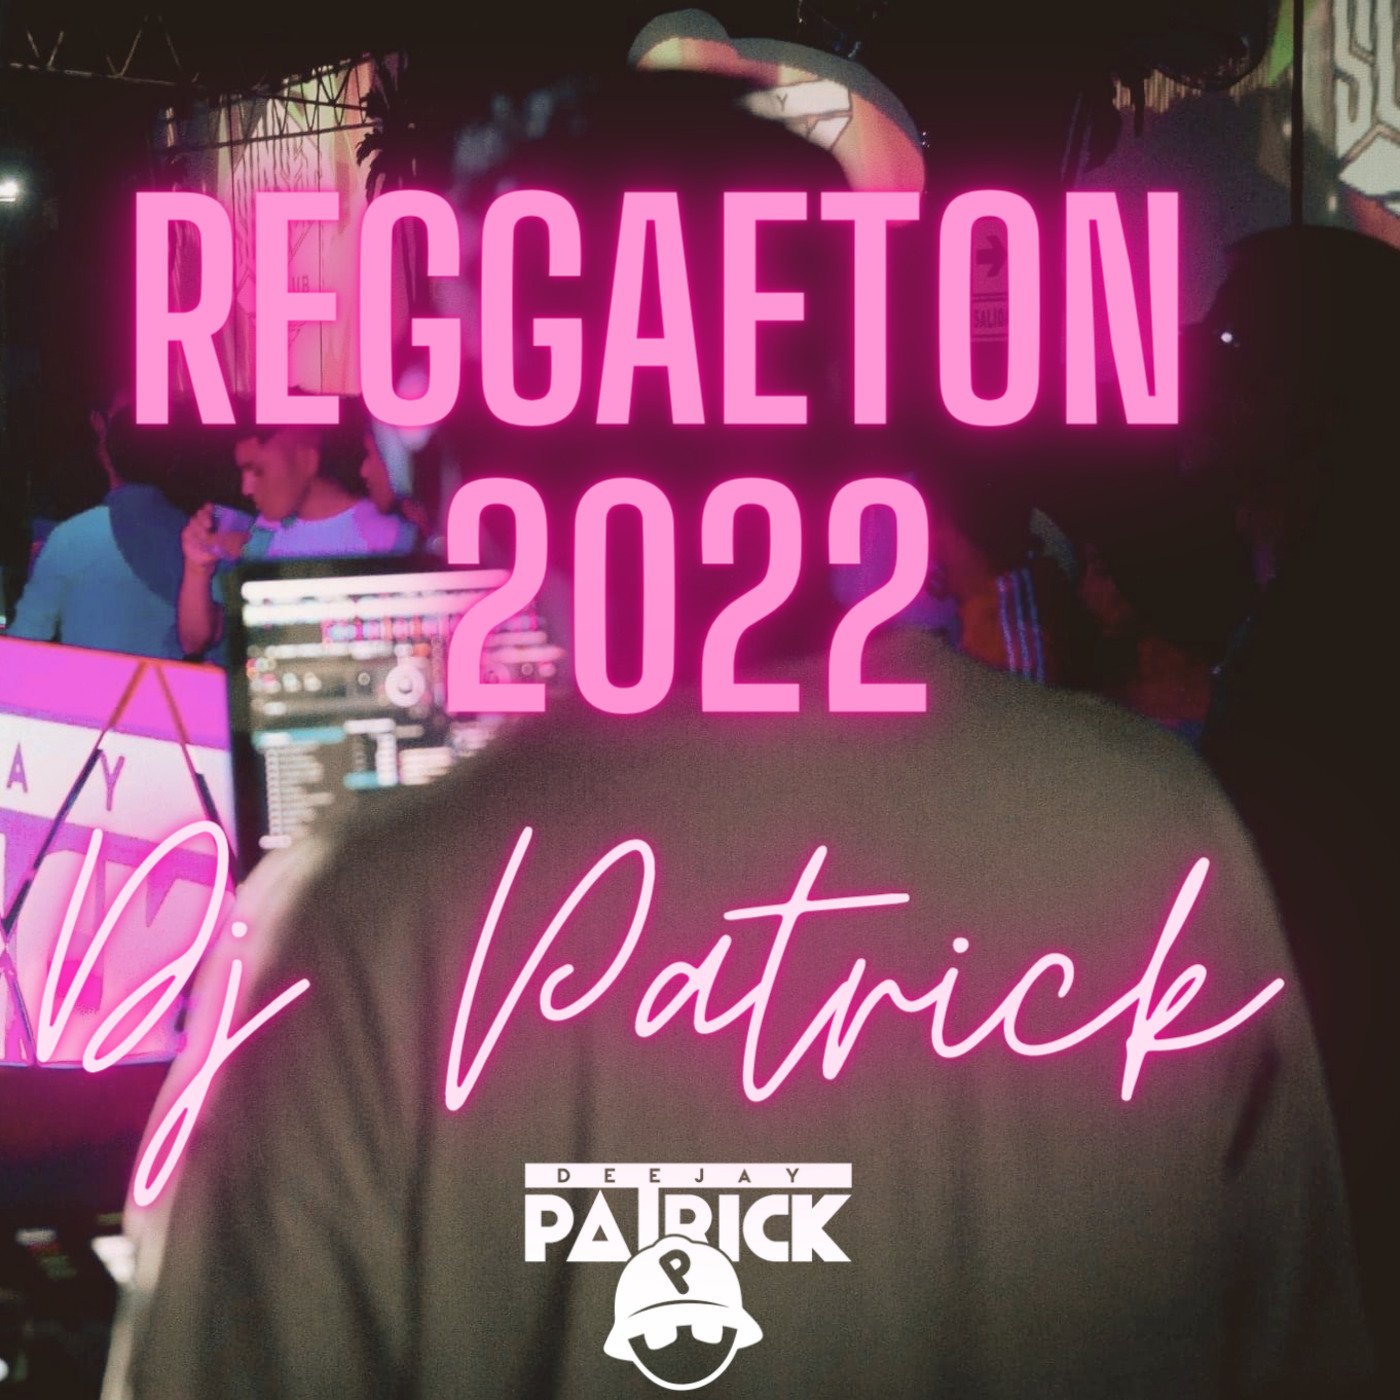 01 Reggaeton 2022 - Dj Patrick